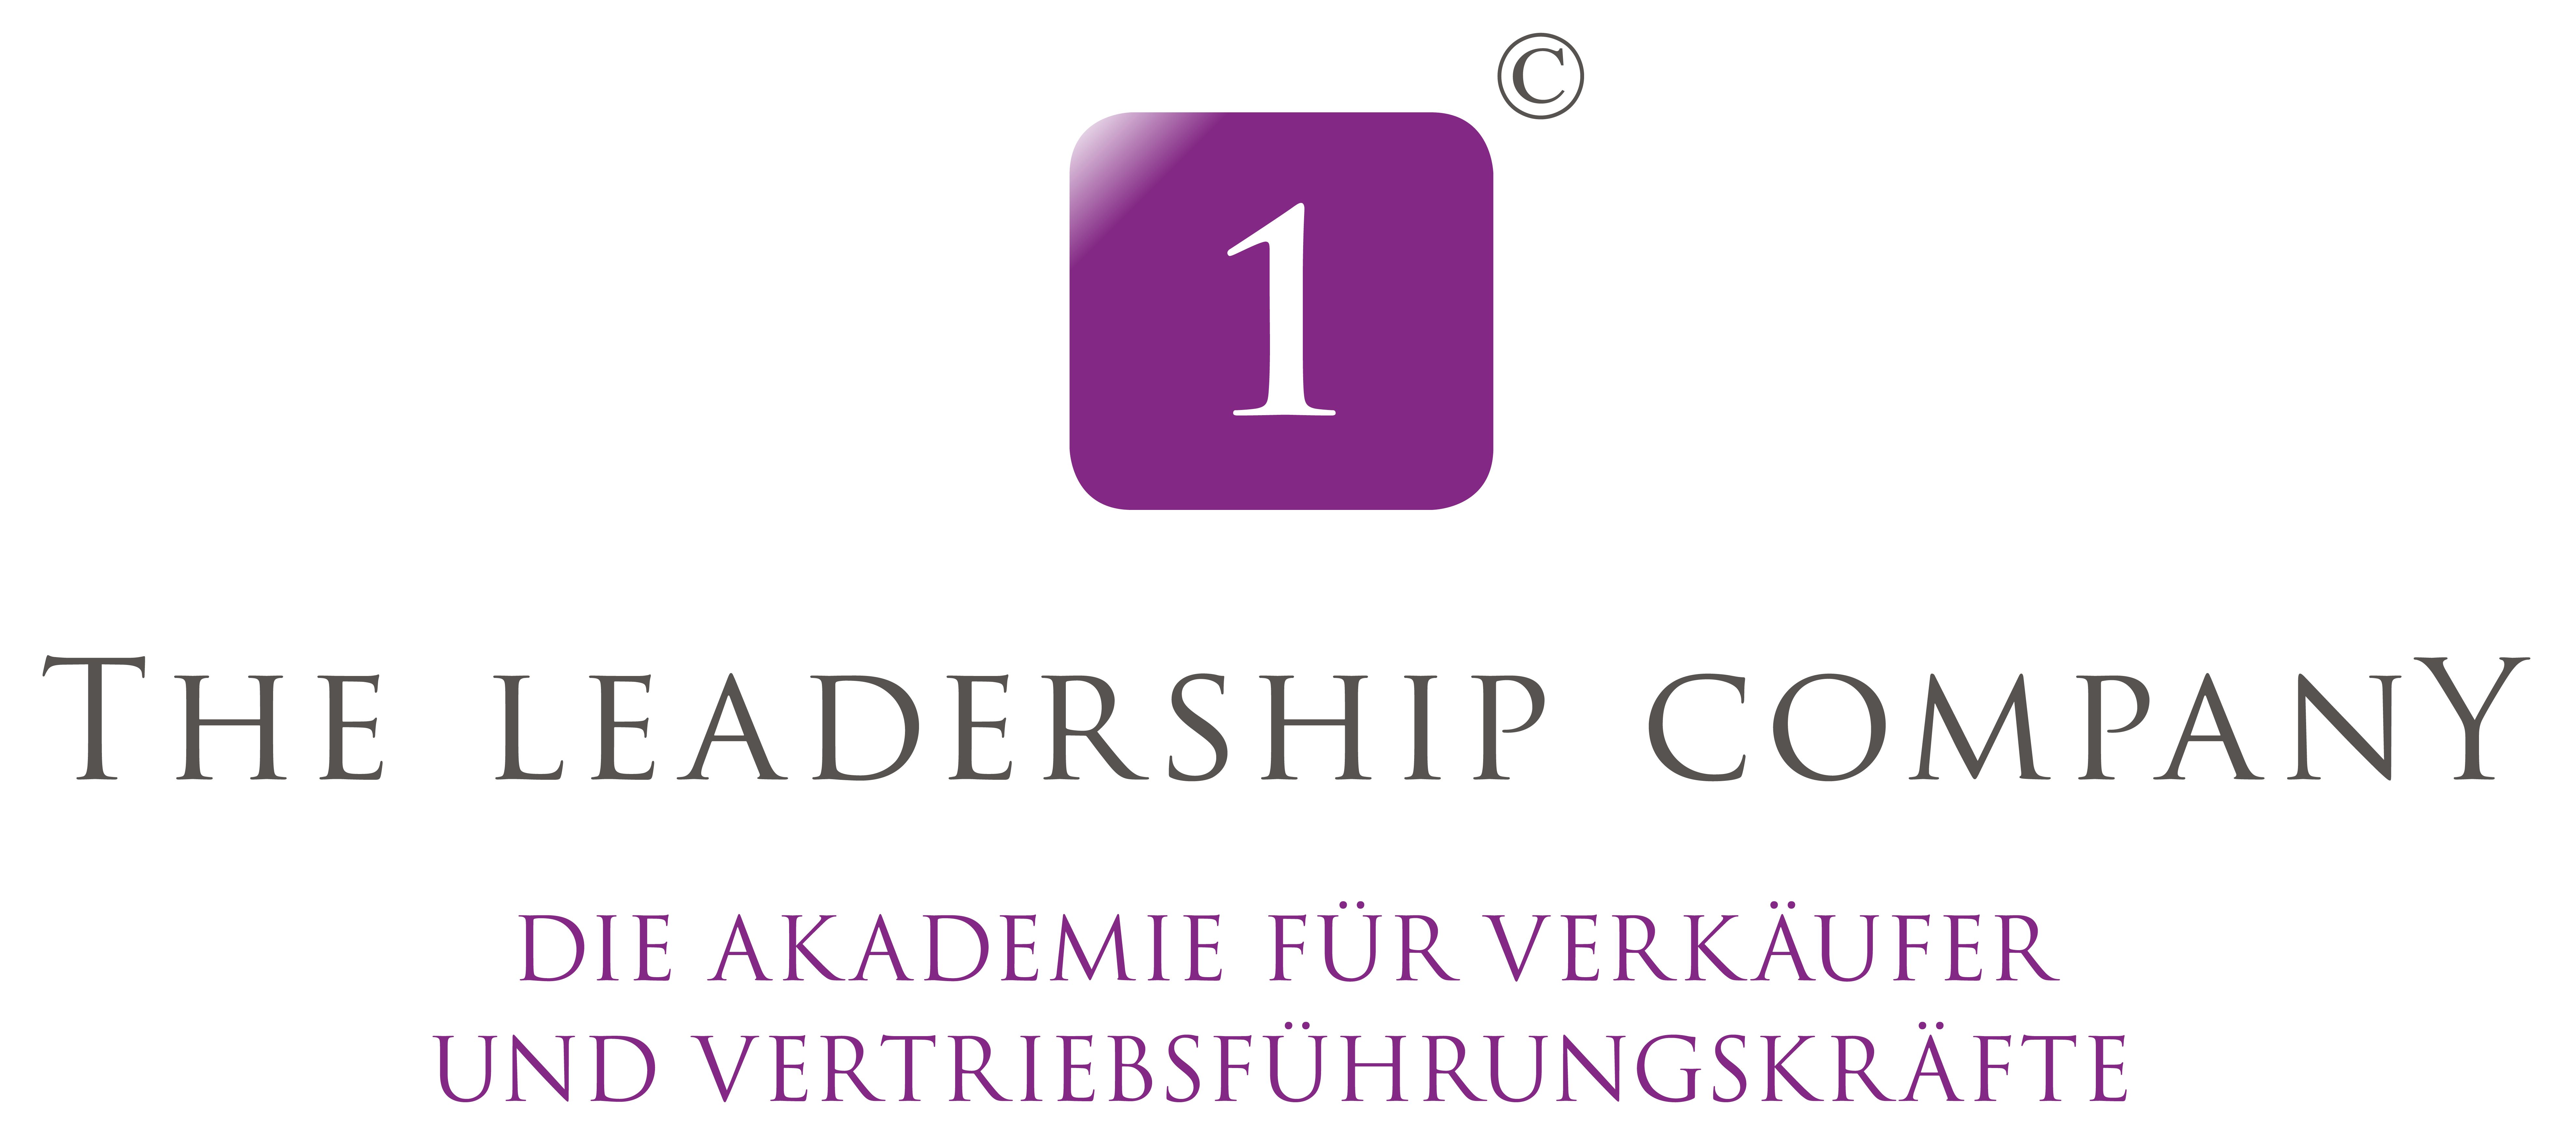 leadership-company